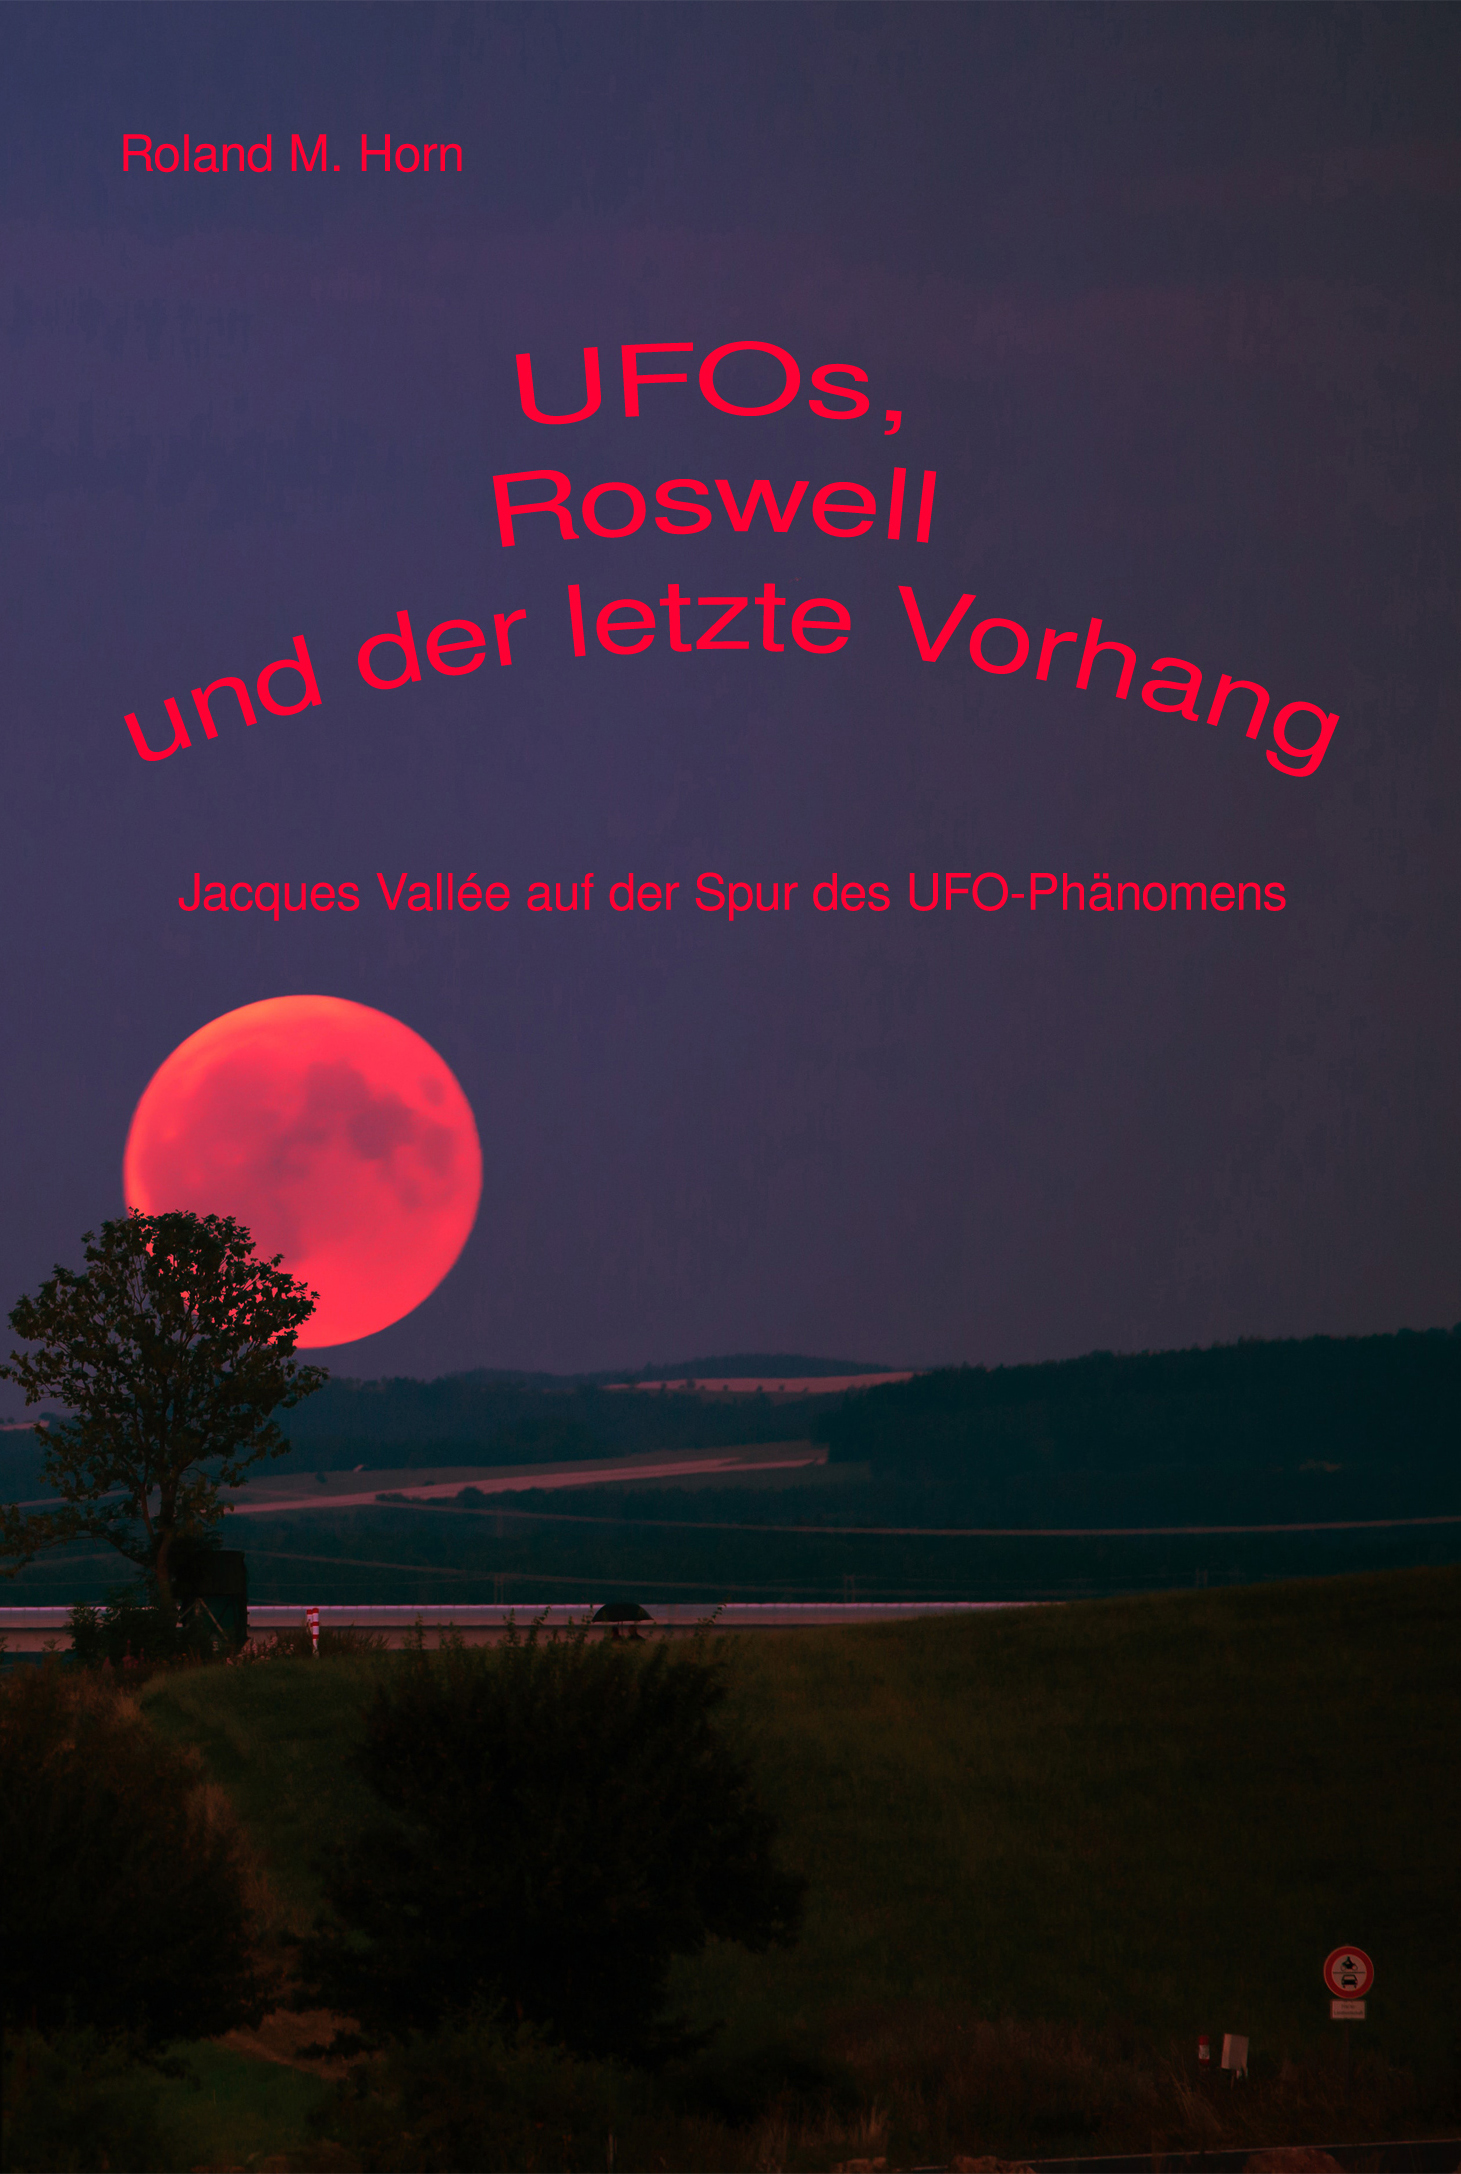 UFOs, Roswell und der letzte Vorhang: Jaques Vallée auf der Spur des UFO-Phänomens (Cover)